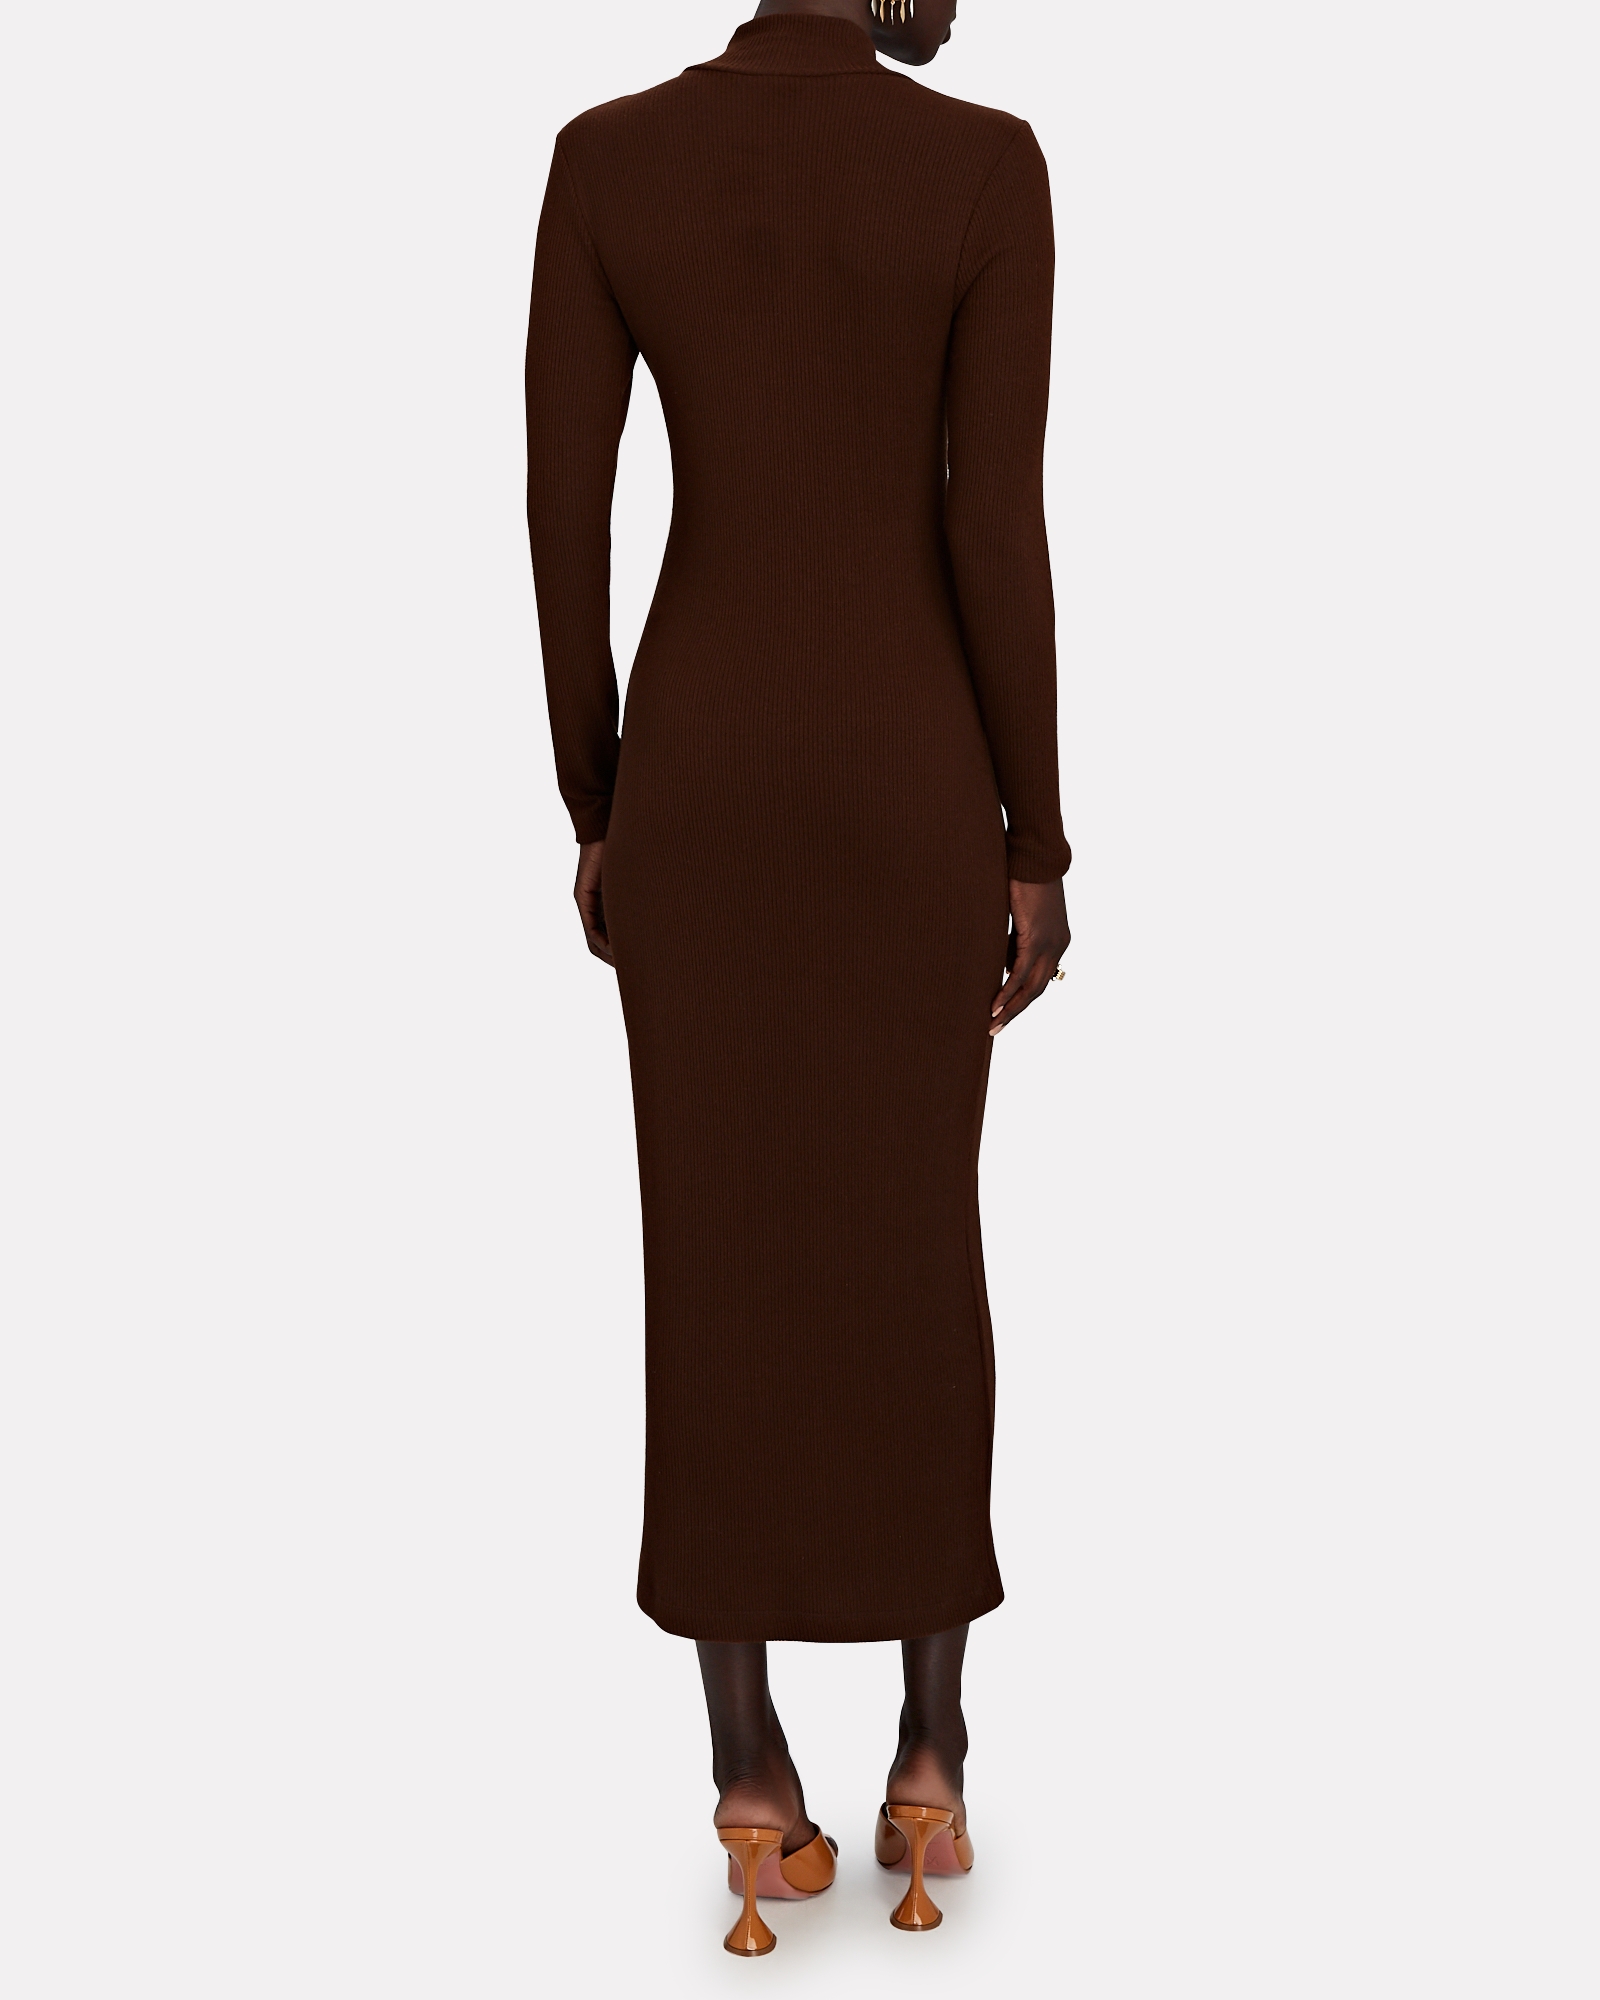 SABLYN Shawn Rib Knit Turtleneck Midi Dress | INTERMIX®